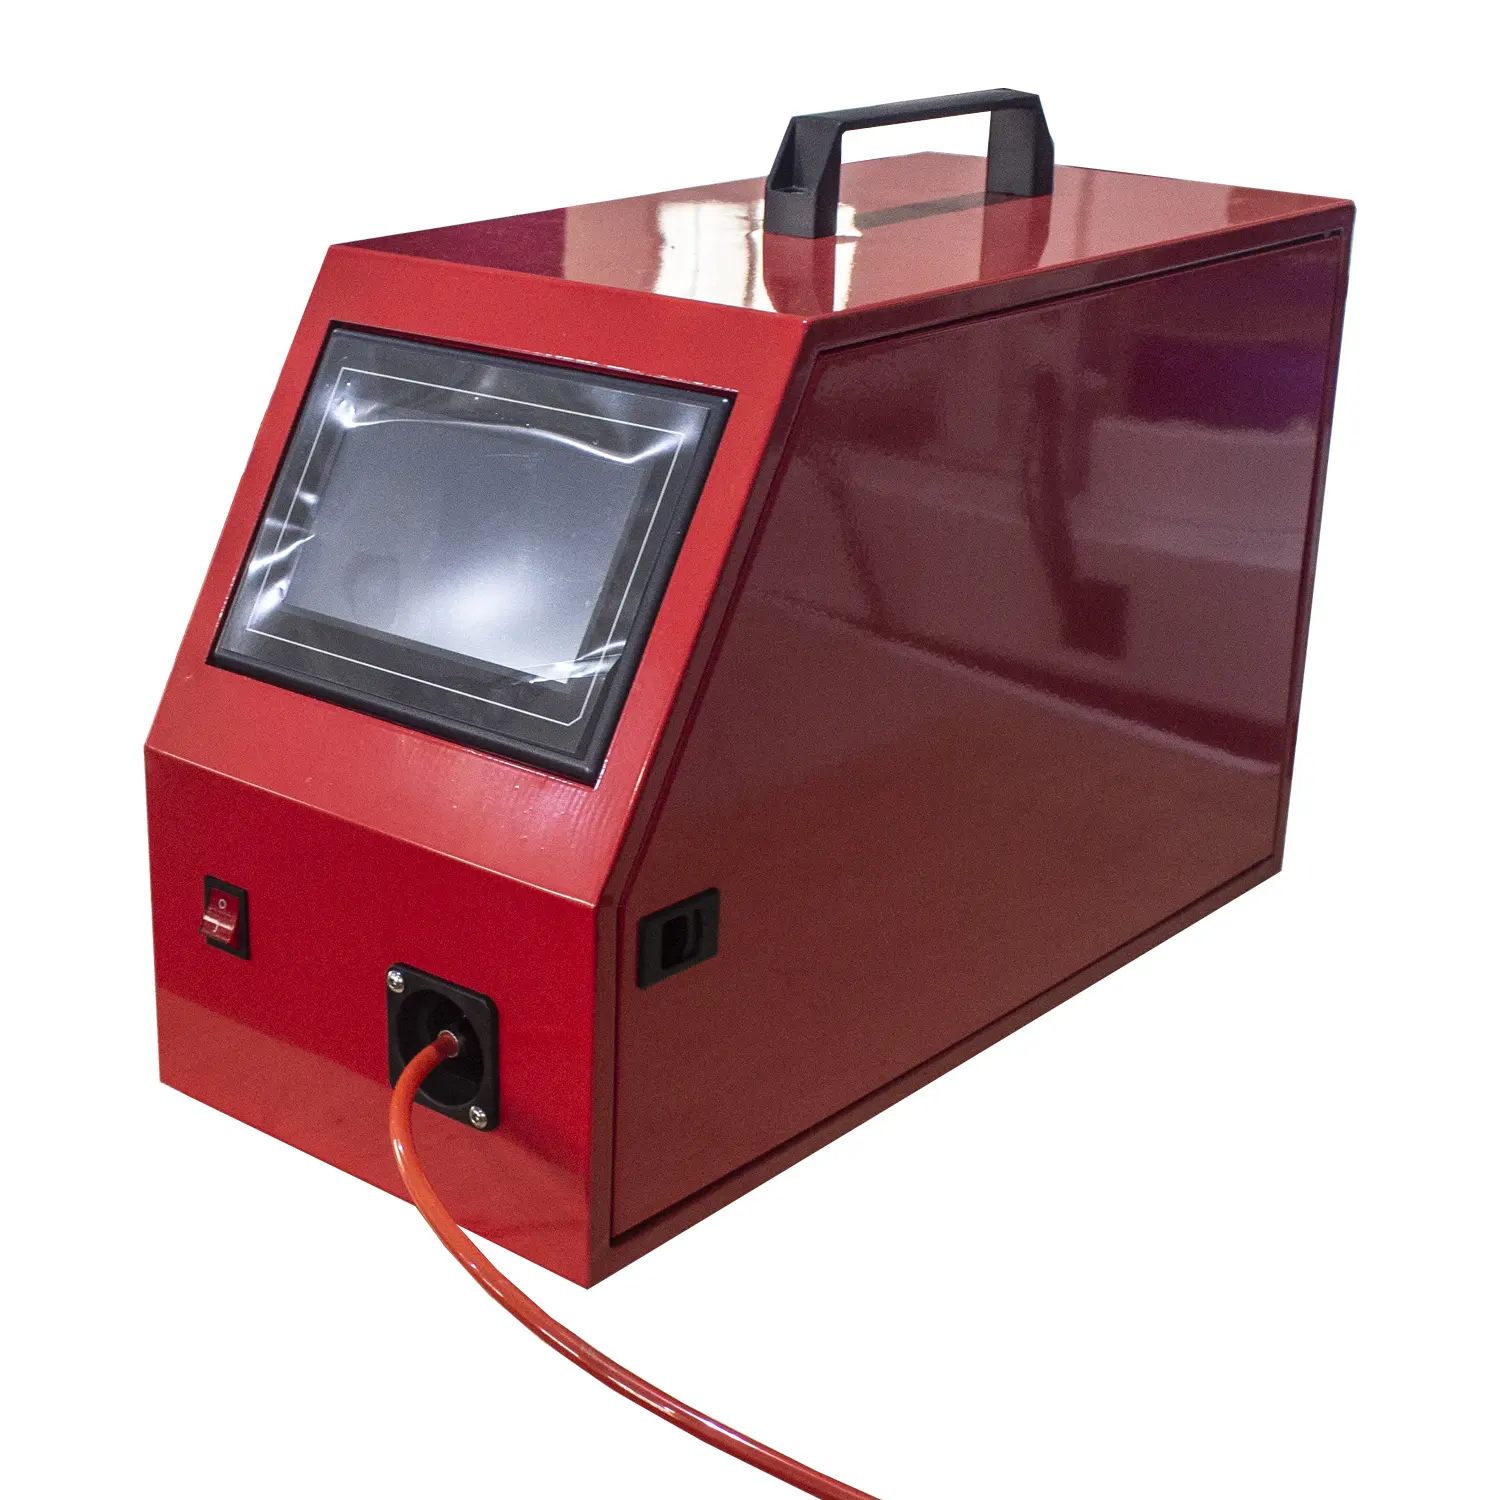 Lazer KAYNAK MAKINESİ Argon ark kaynak makinesi KAYNAK MAKINESİ için uygun lazer otomatik dijital kontrollü tel besleyici